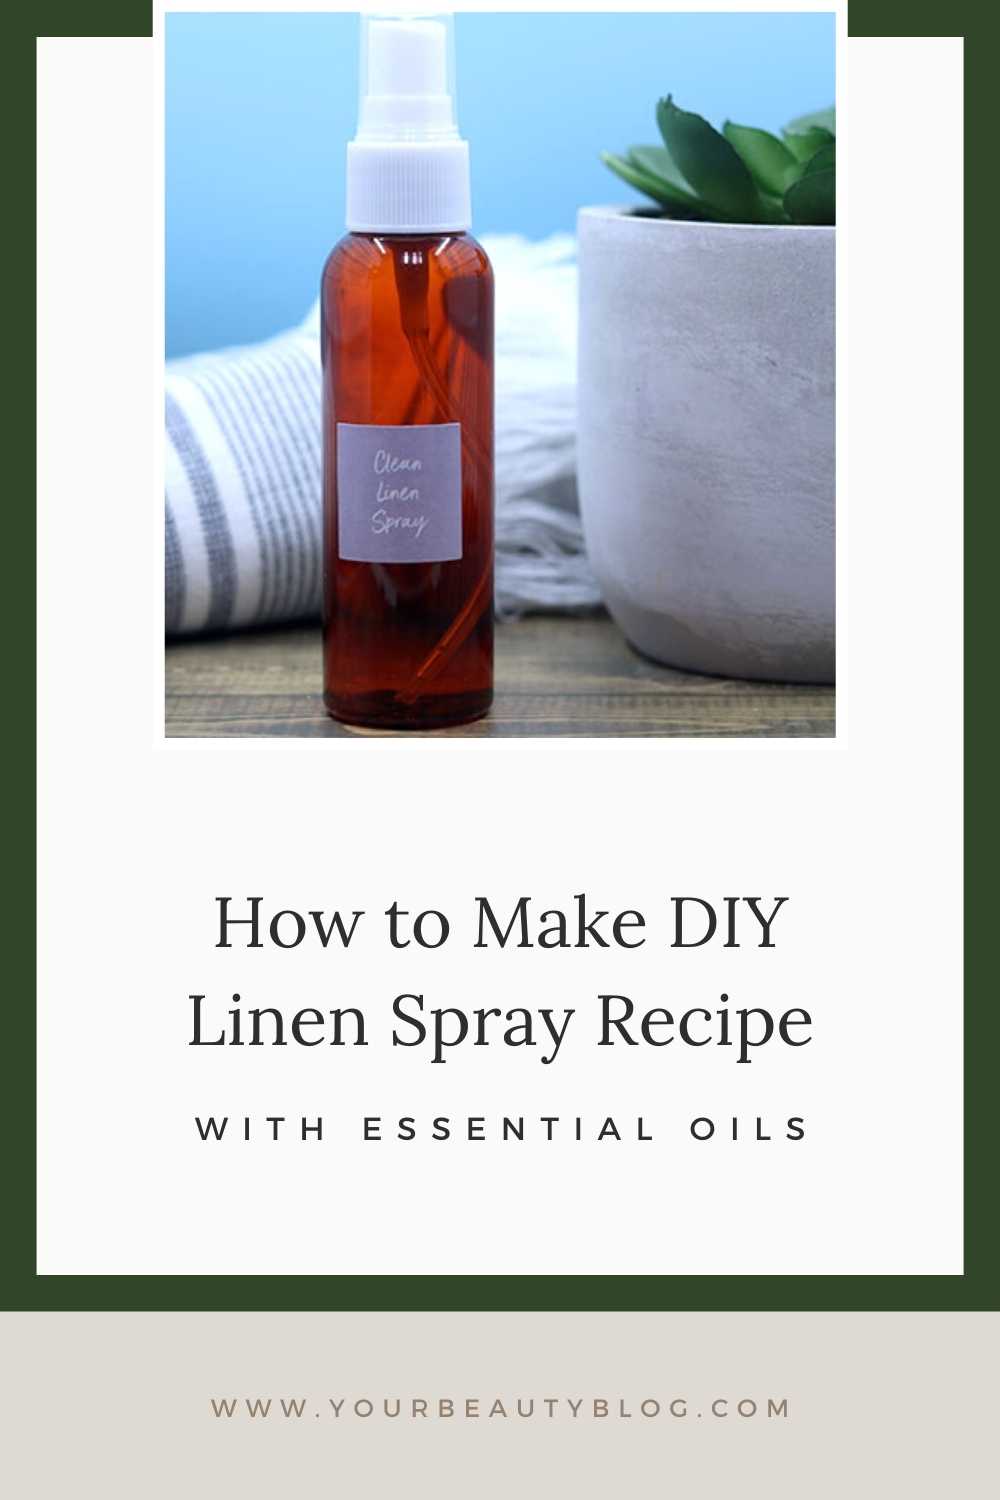 DIY linen spray recipe